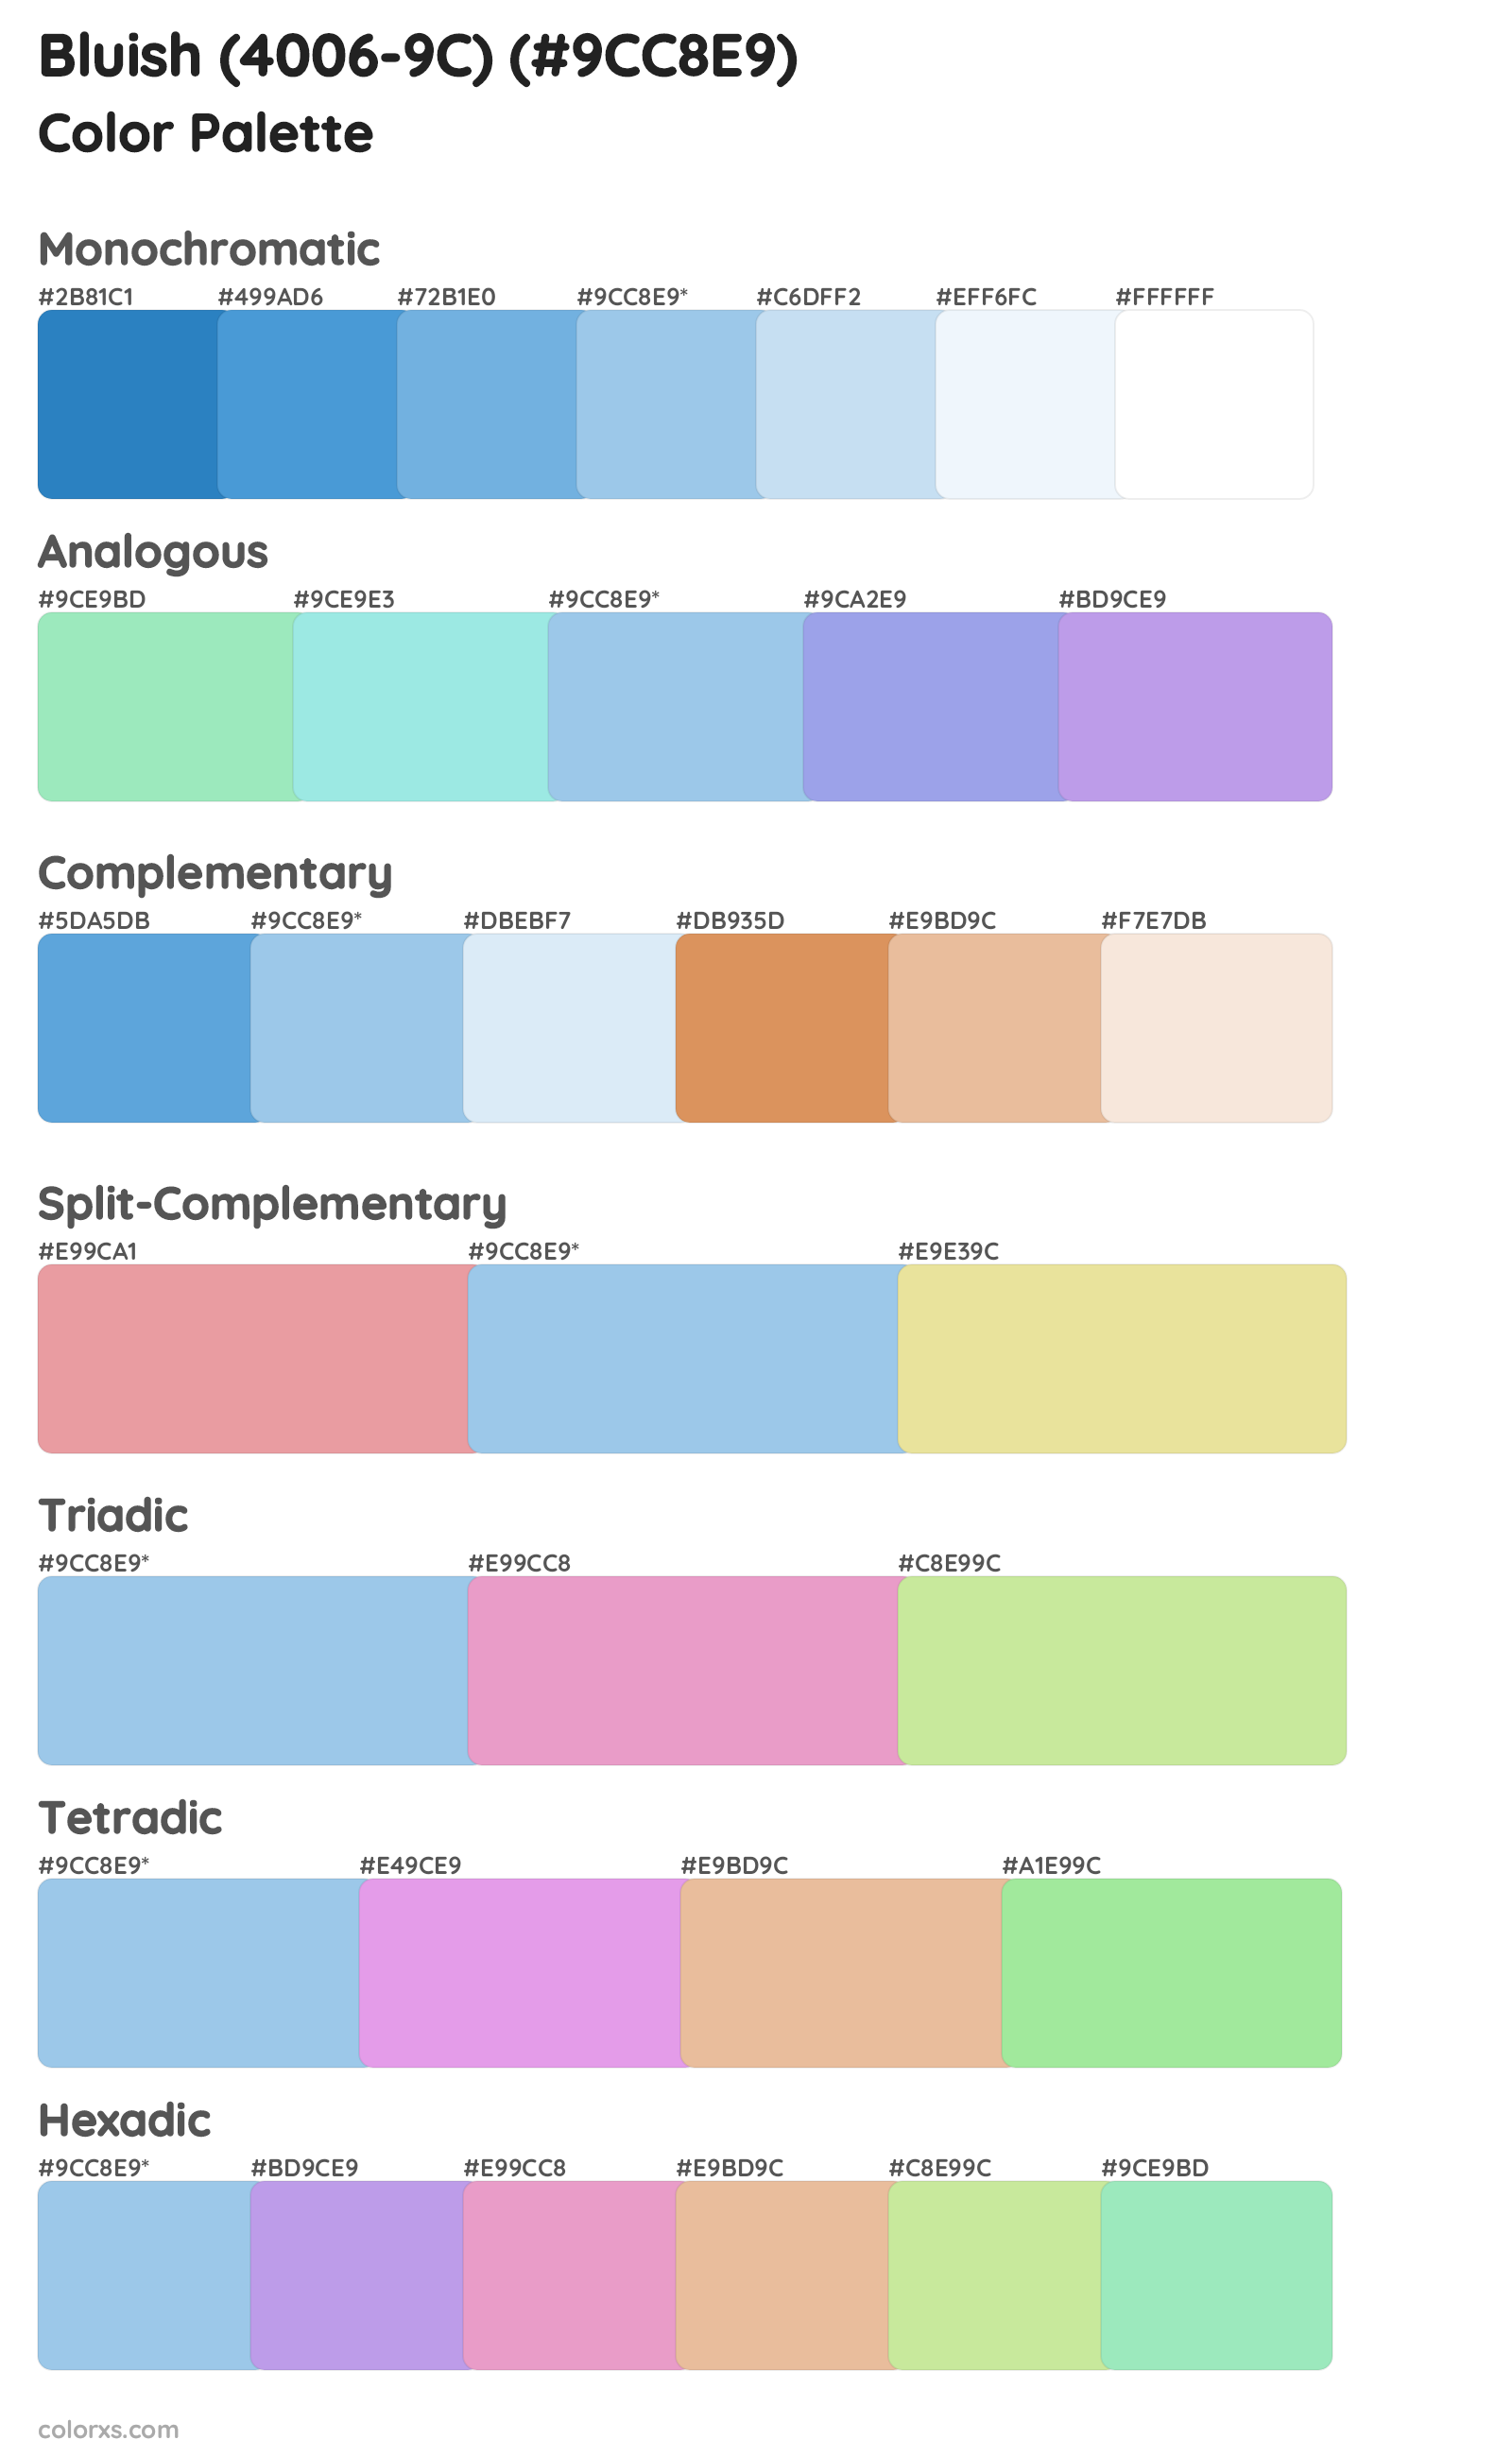 Bluish (4006-9C) Color Scheme Palettes